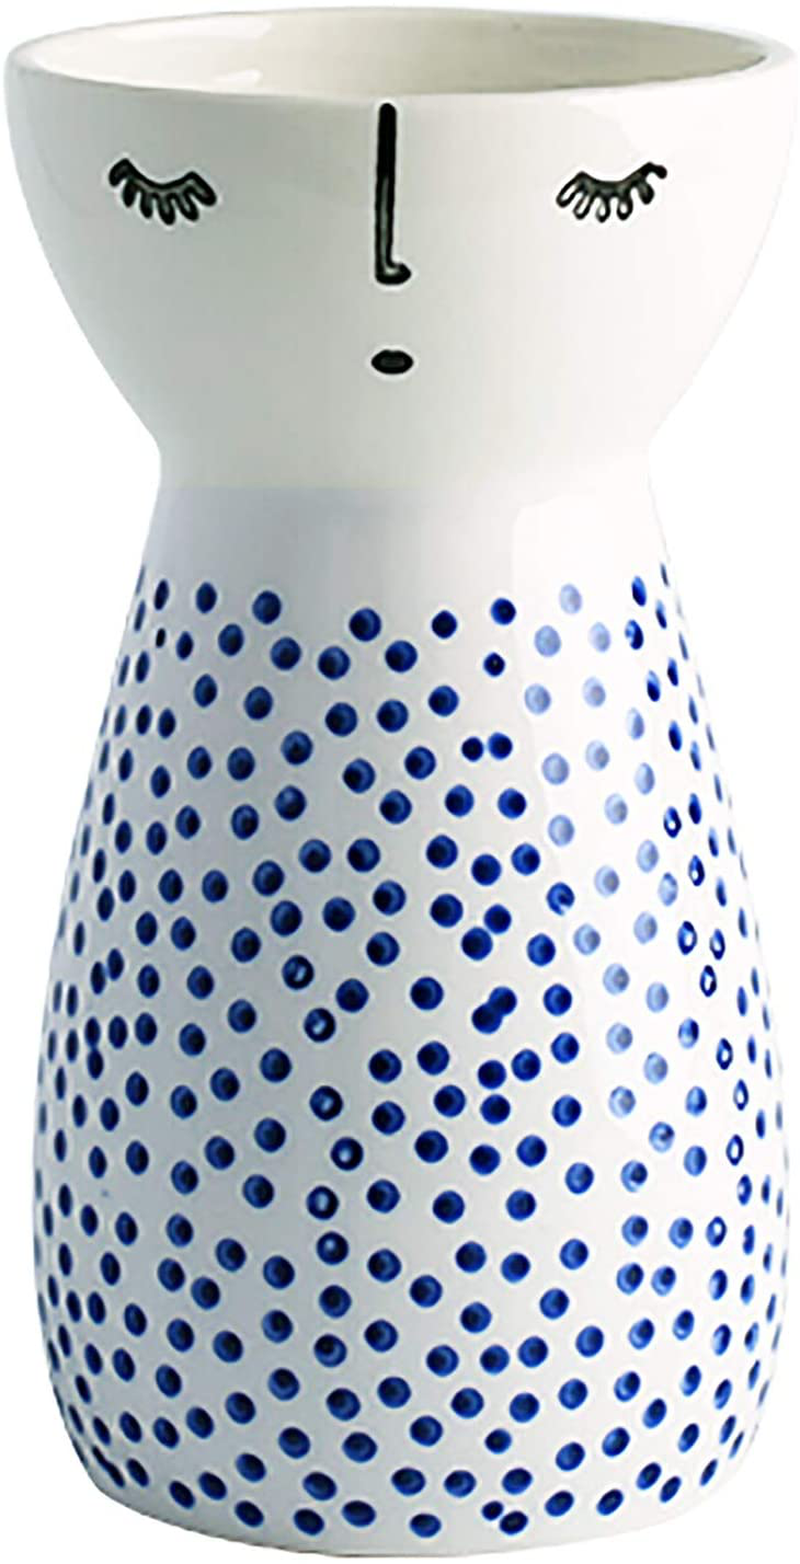 Senliart White Ceramic Vase, Small Flower Vases for Home Décor, 5.9 X 3.2 (Polka Dot) Home & Garden > Decor > Vases Senliart Polka Dot  